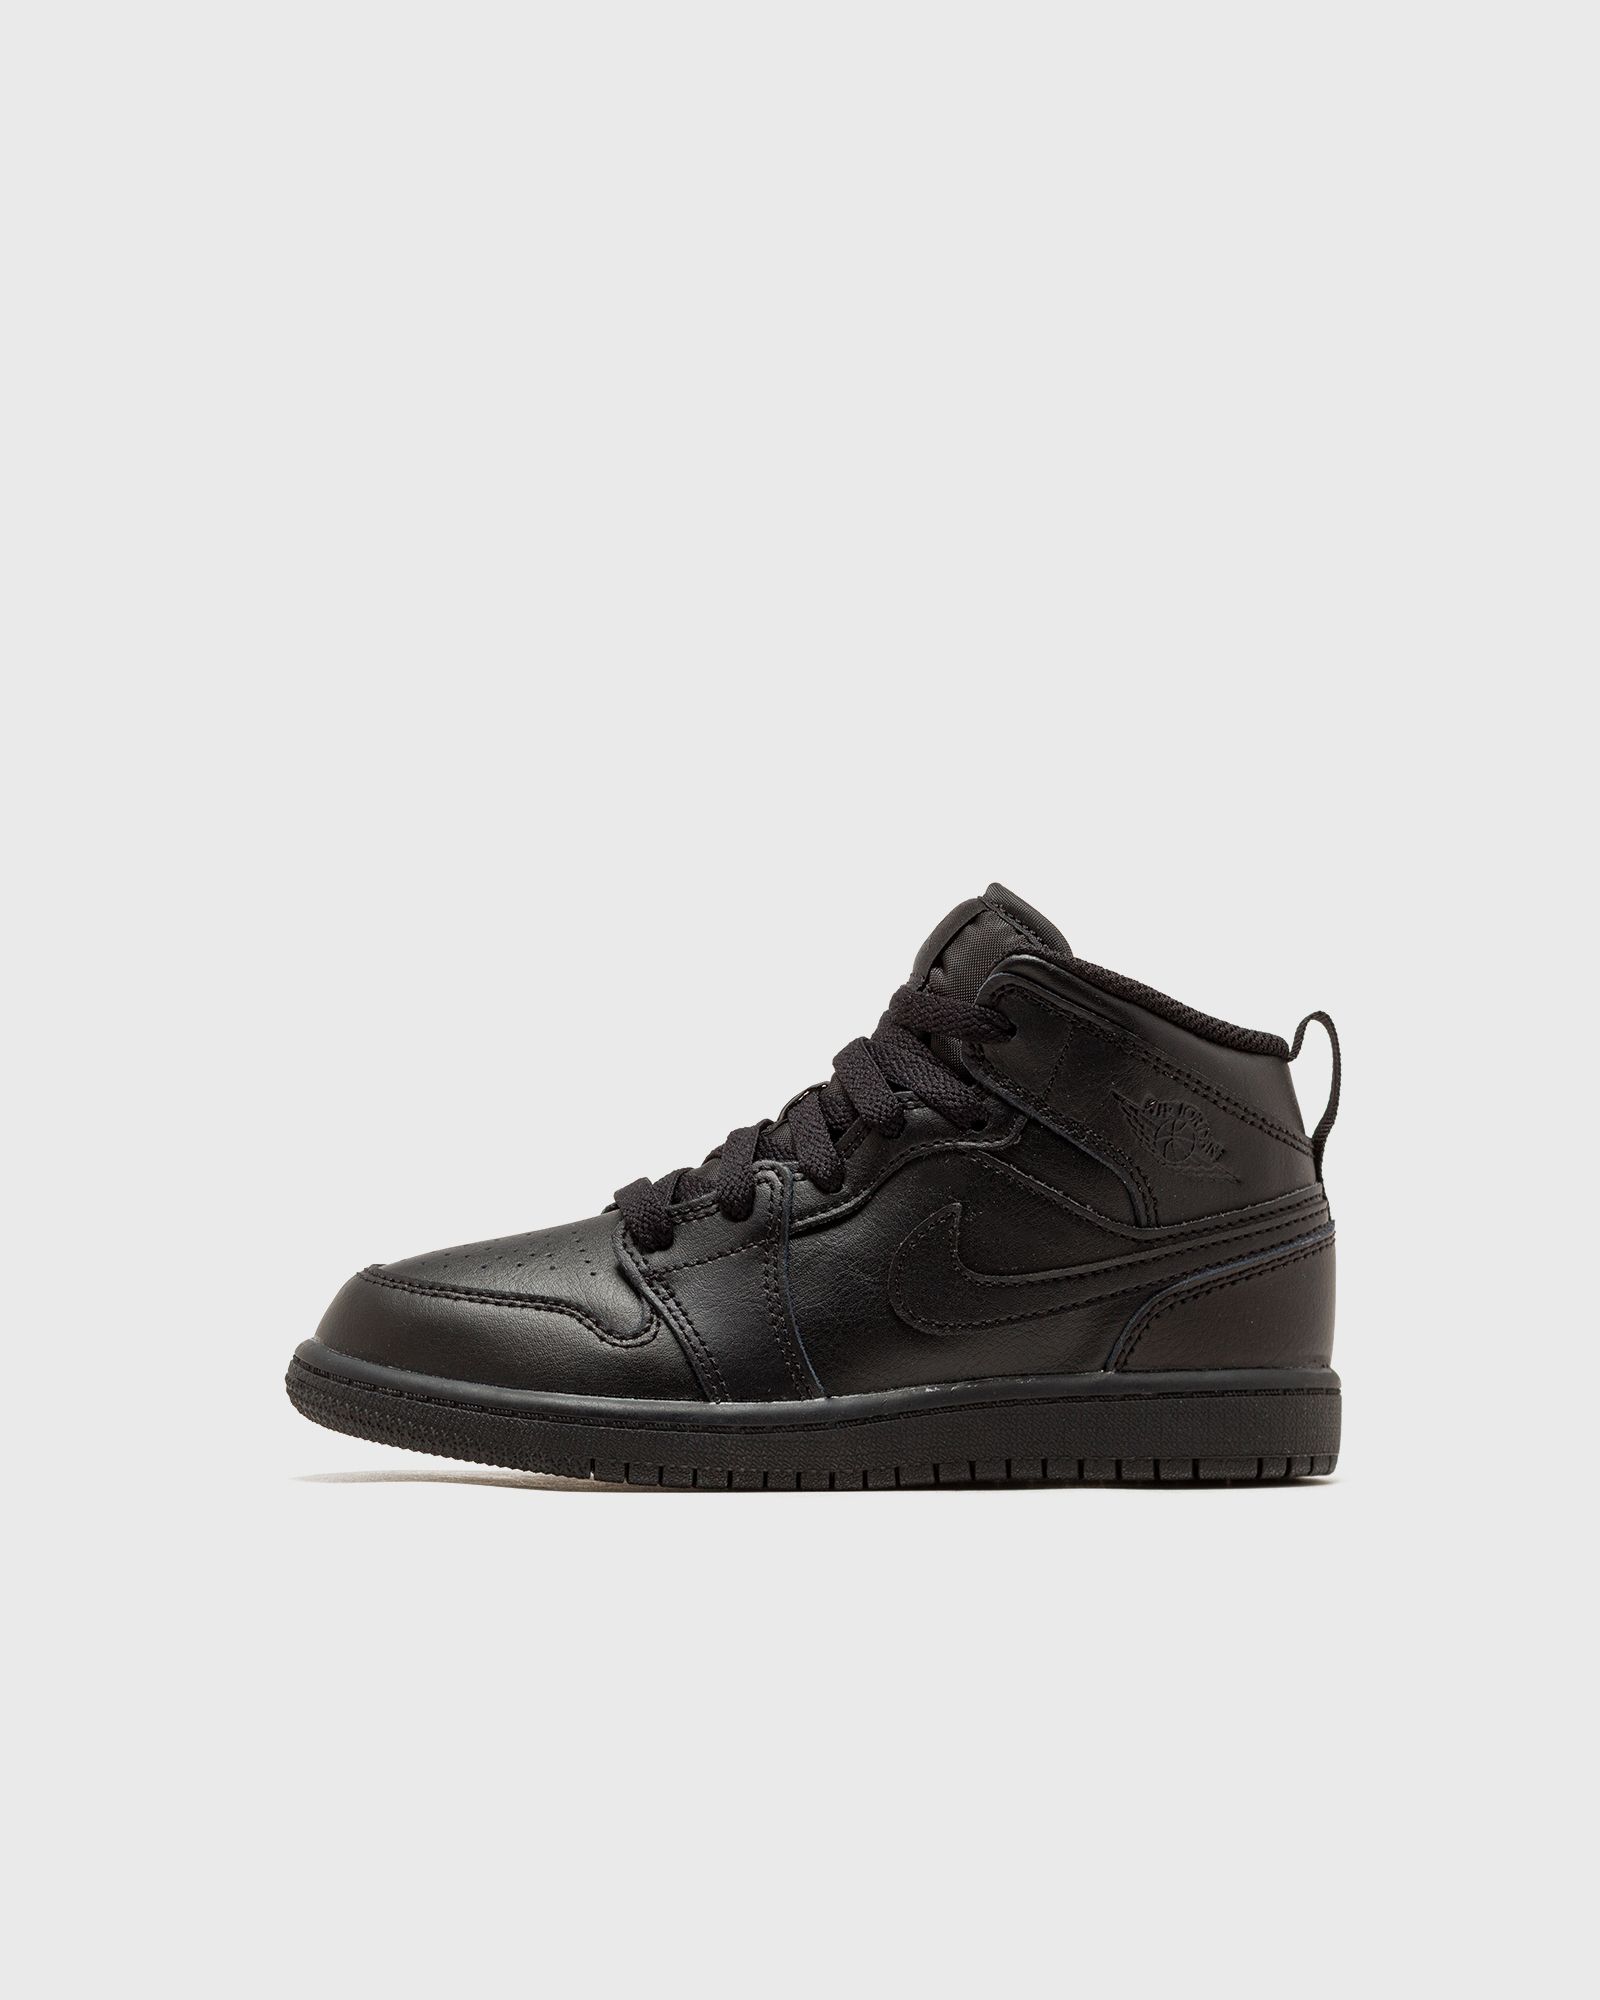 Jordan - 1 mid (ps)  sneakers black in größe:33,5